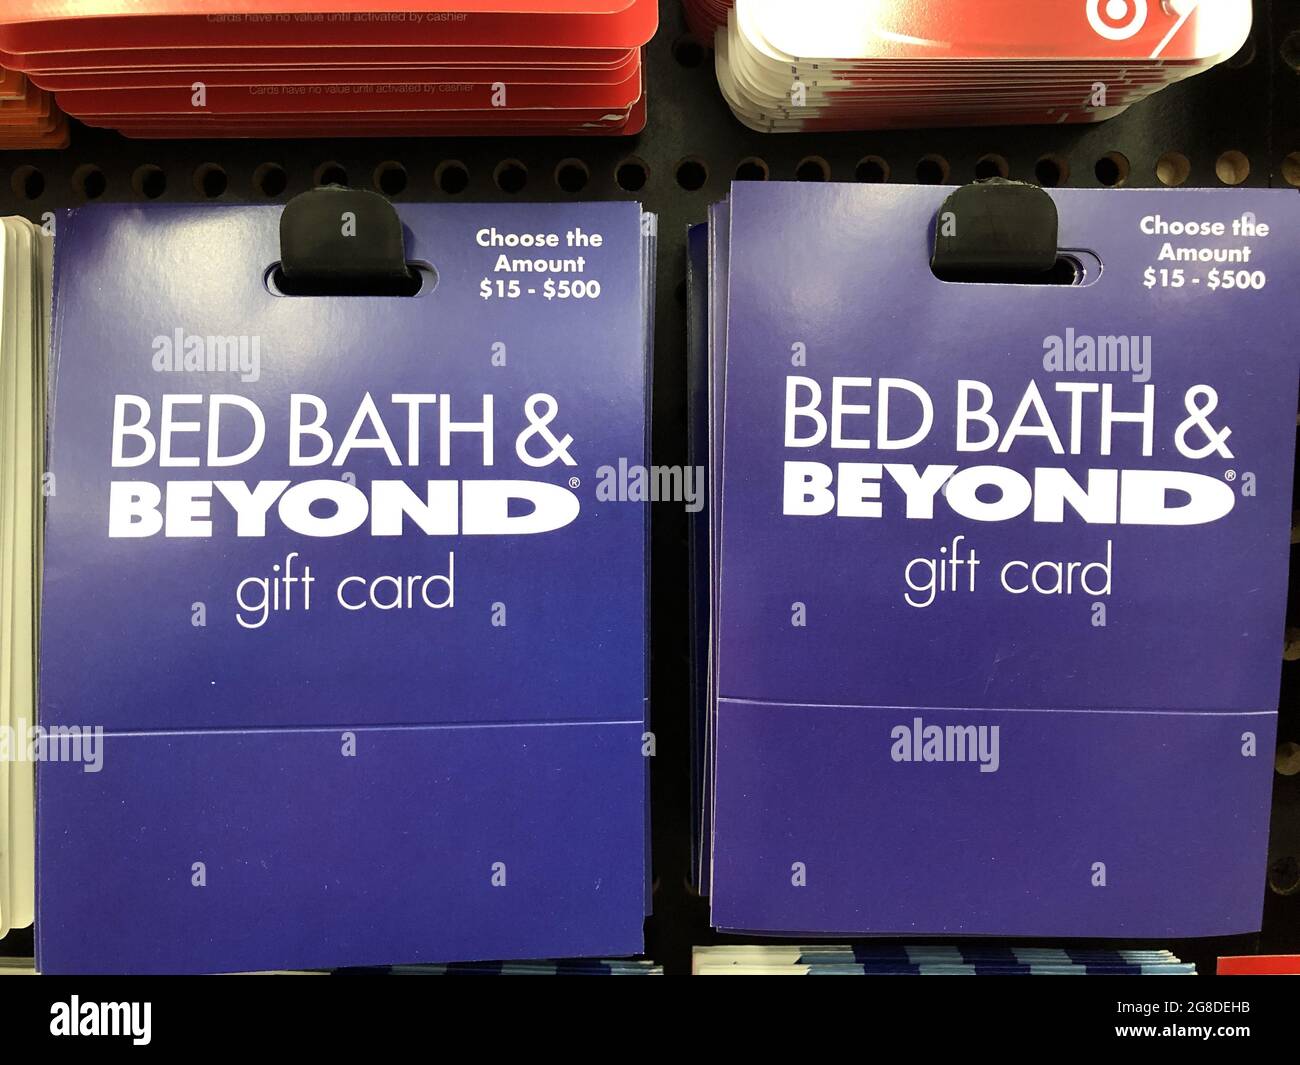 Indianapolis - circa Februar 2021: Geschenkgutscheine für Bettbäder und andere Produkte. Geschenkgutscheine für Bed Bath & Beyond werden online oder an den Standorten Bed Bath & Beyond akzeptiert. Stockfoto